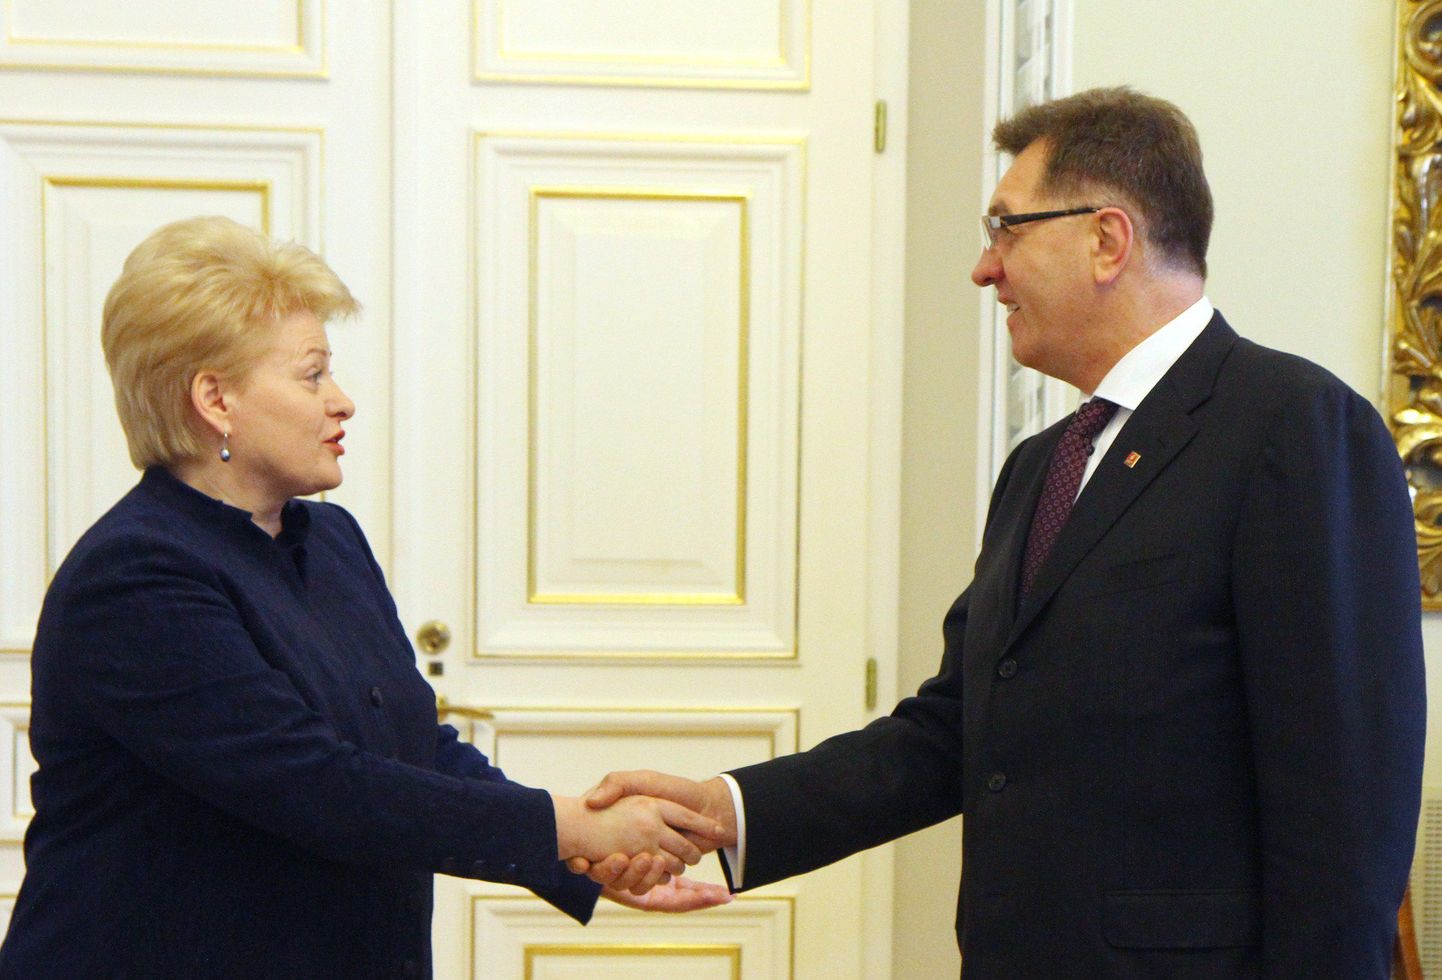 Leedu president Dalia Grybauskaitė ja peaminister Algirdas Butkevičius.